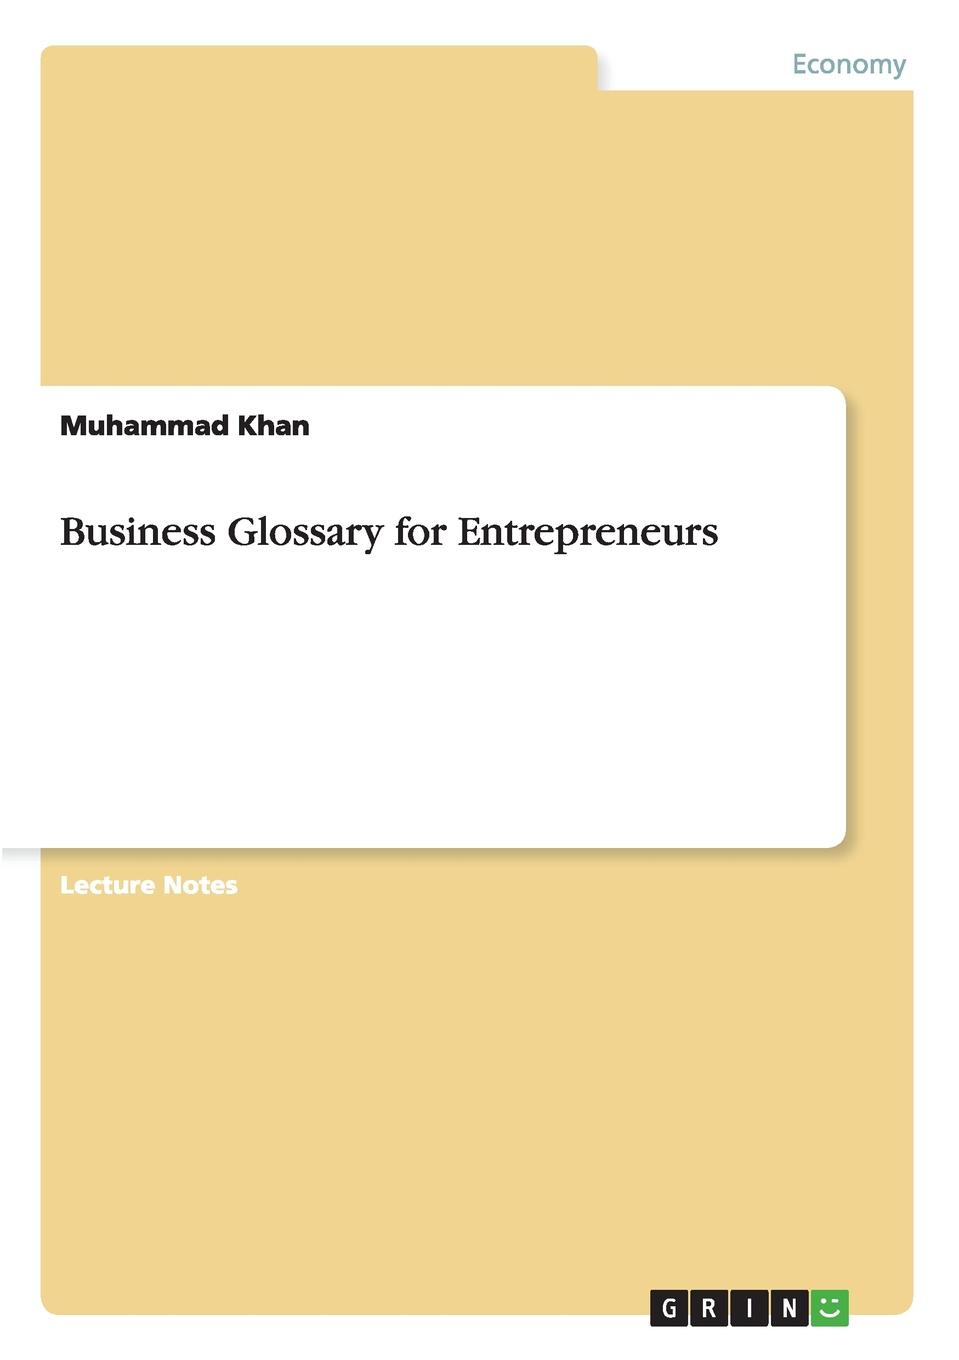 Muhammad Khan Business Glossary for Entrepreneurs